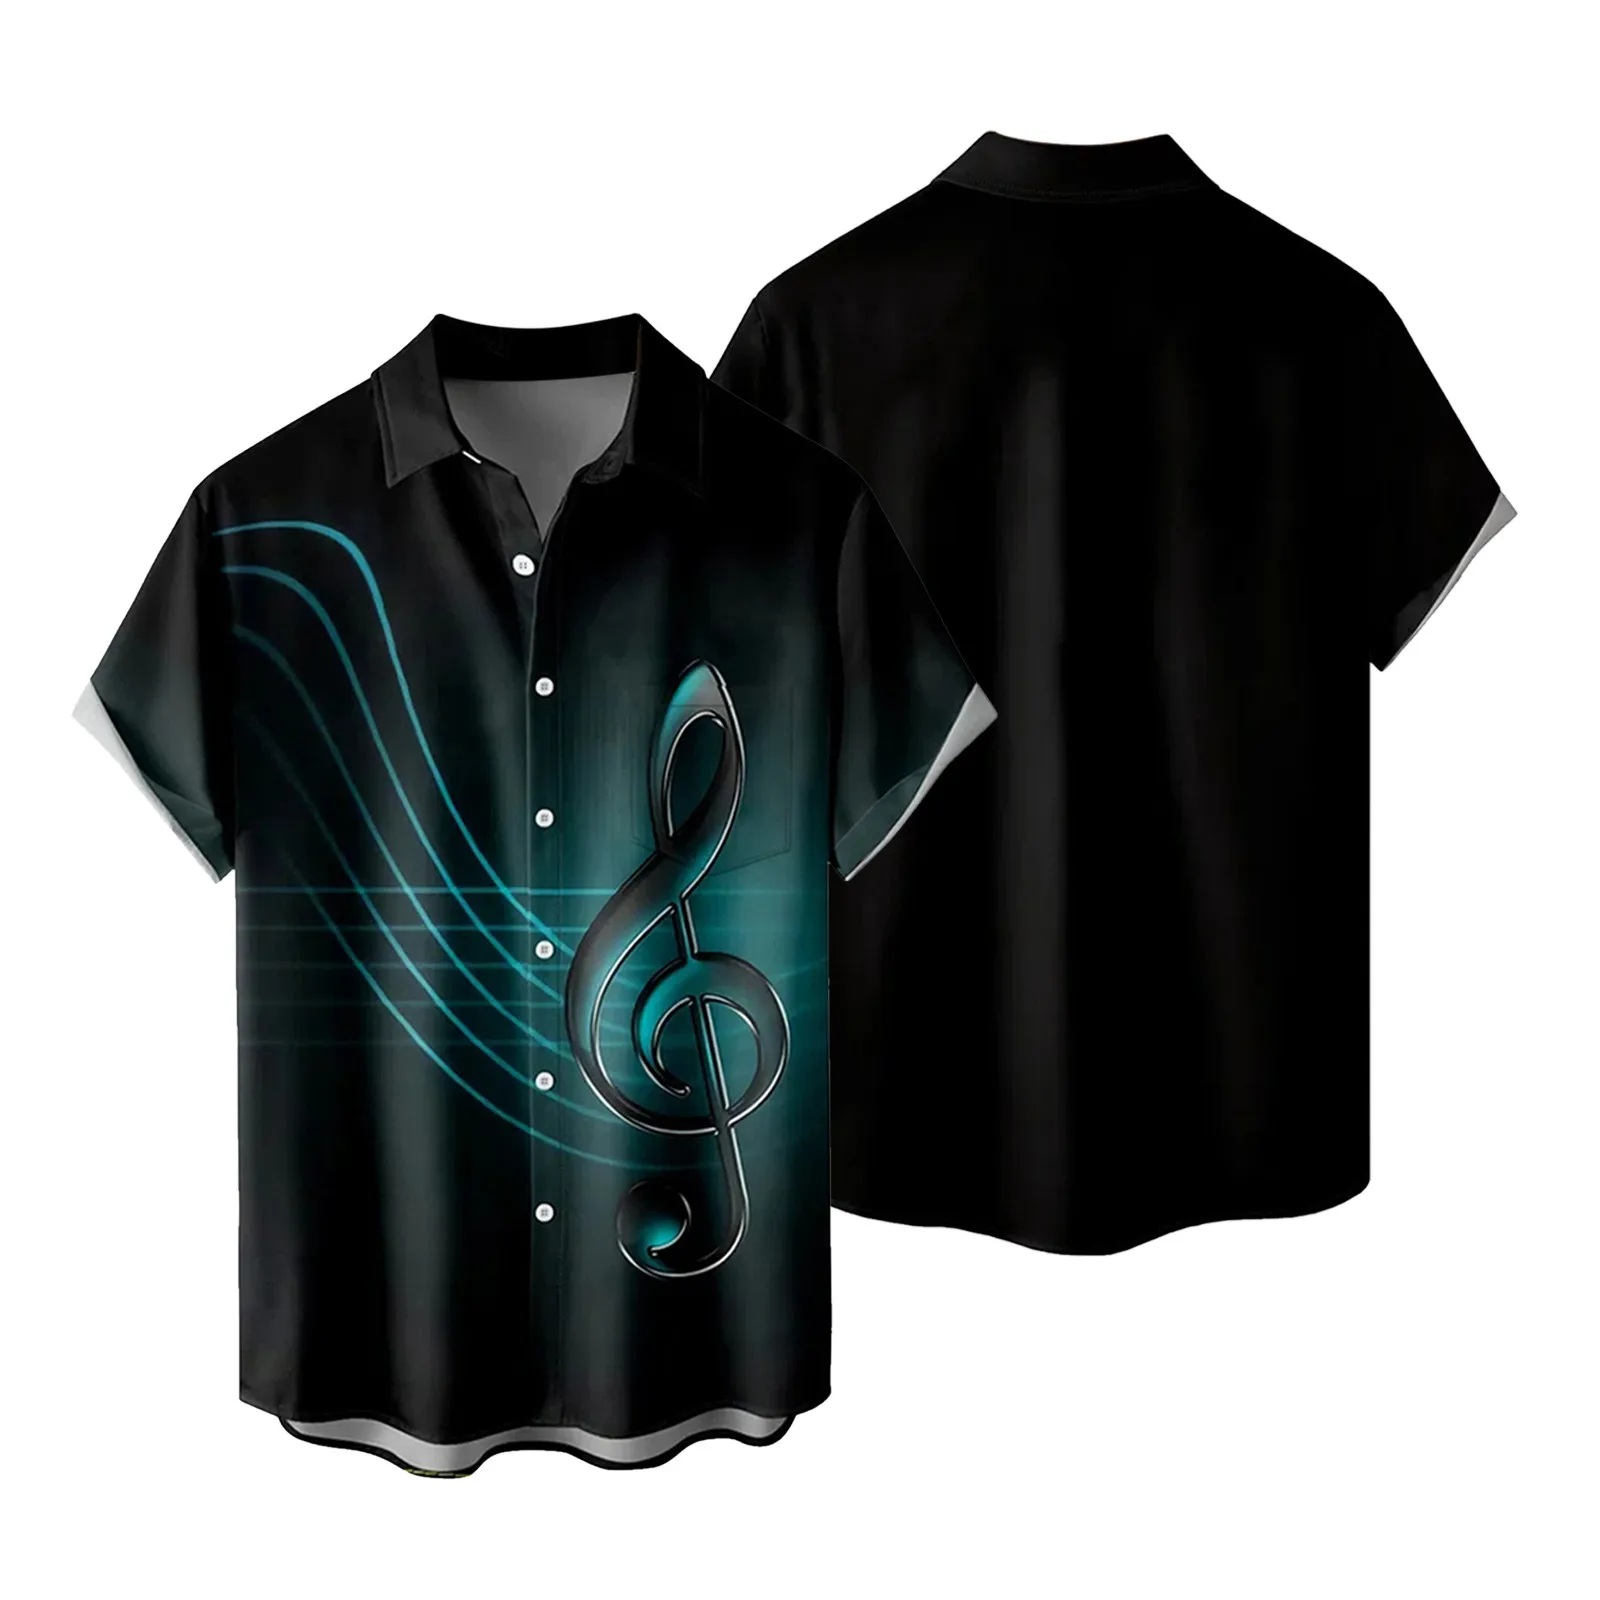 

Повседневная рубашка с принтом Note, топы, рубашка из хлопка и льна с отложным воротником и короткими рукавами, блузка на пуговицах в дорожном стиле, мужской кардиган градиентного цвета